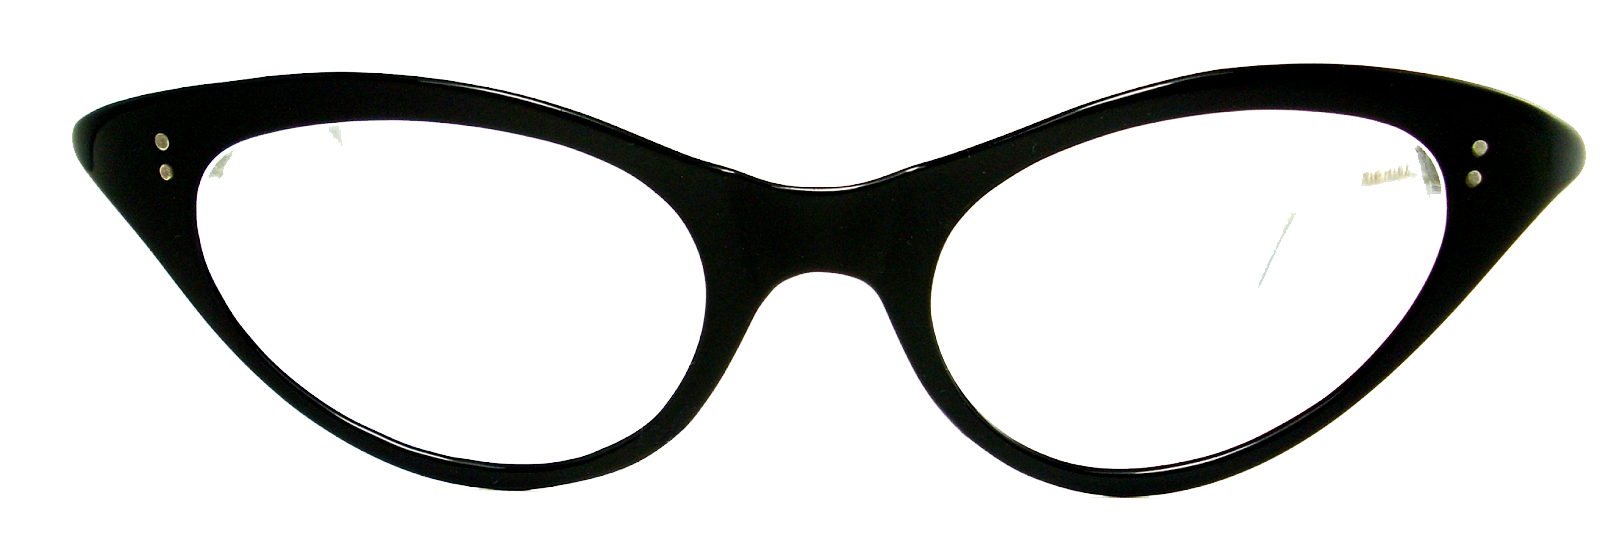 1950s Cat eye glasses Lens Sunglasses - Sunglasses Frames PNG